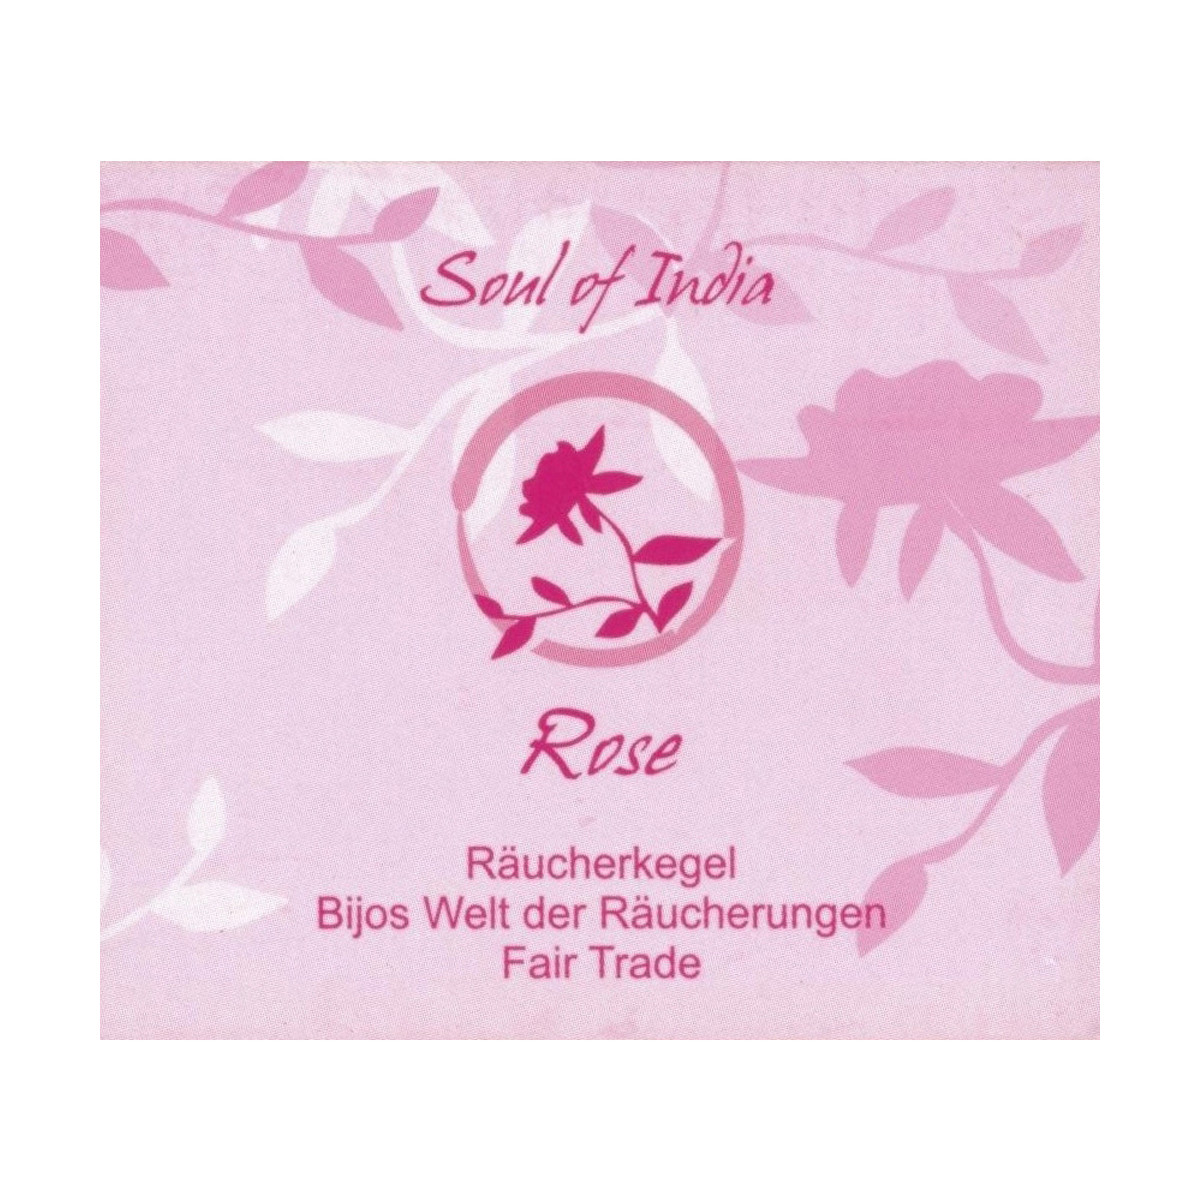 Rose - Soul of India - FAIR TRADE Räucherkegel